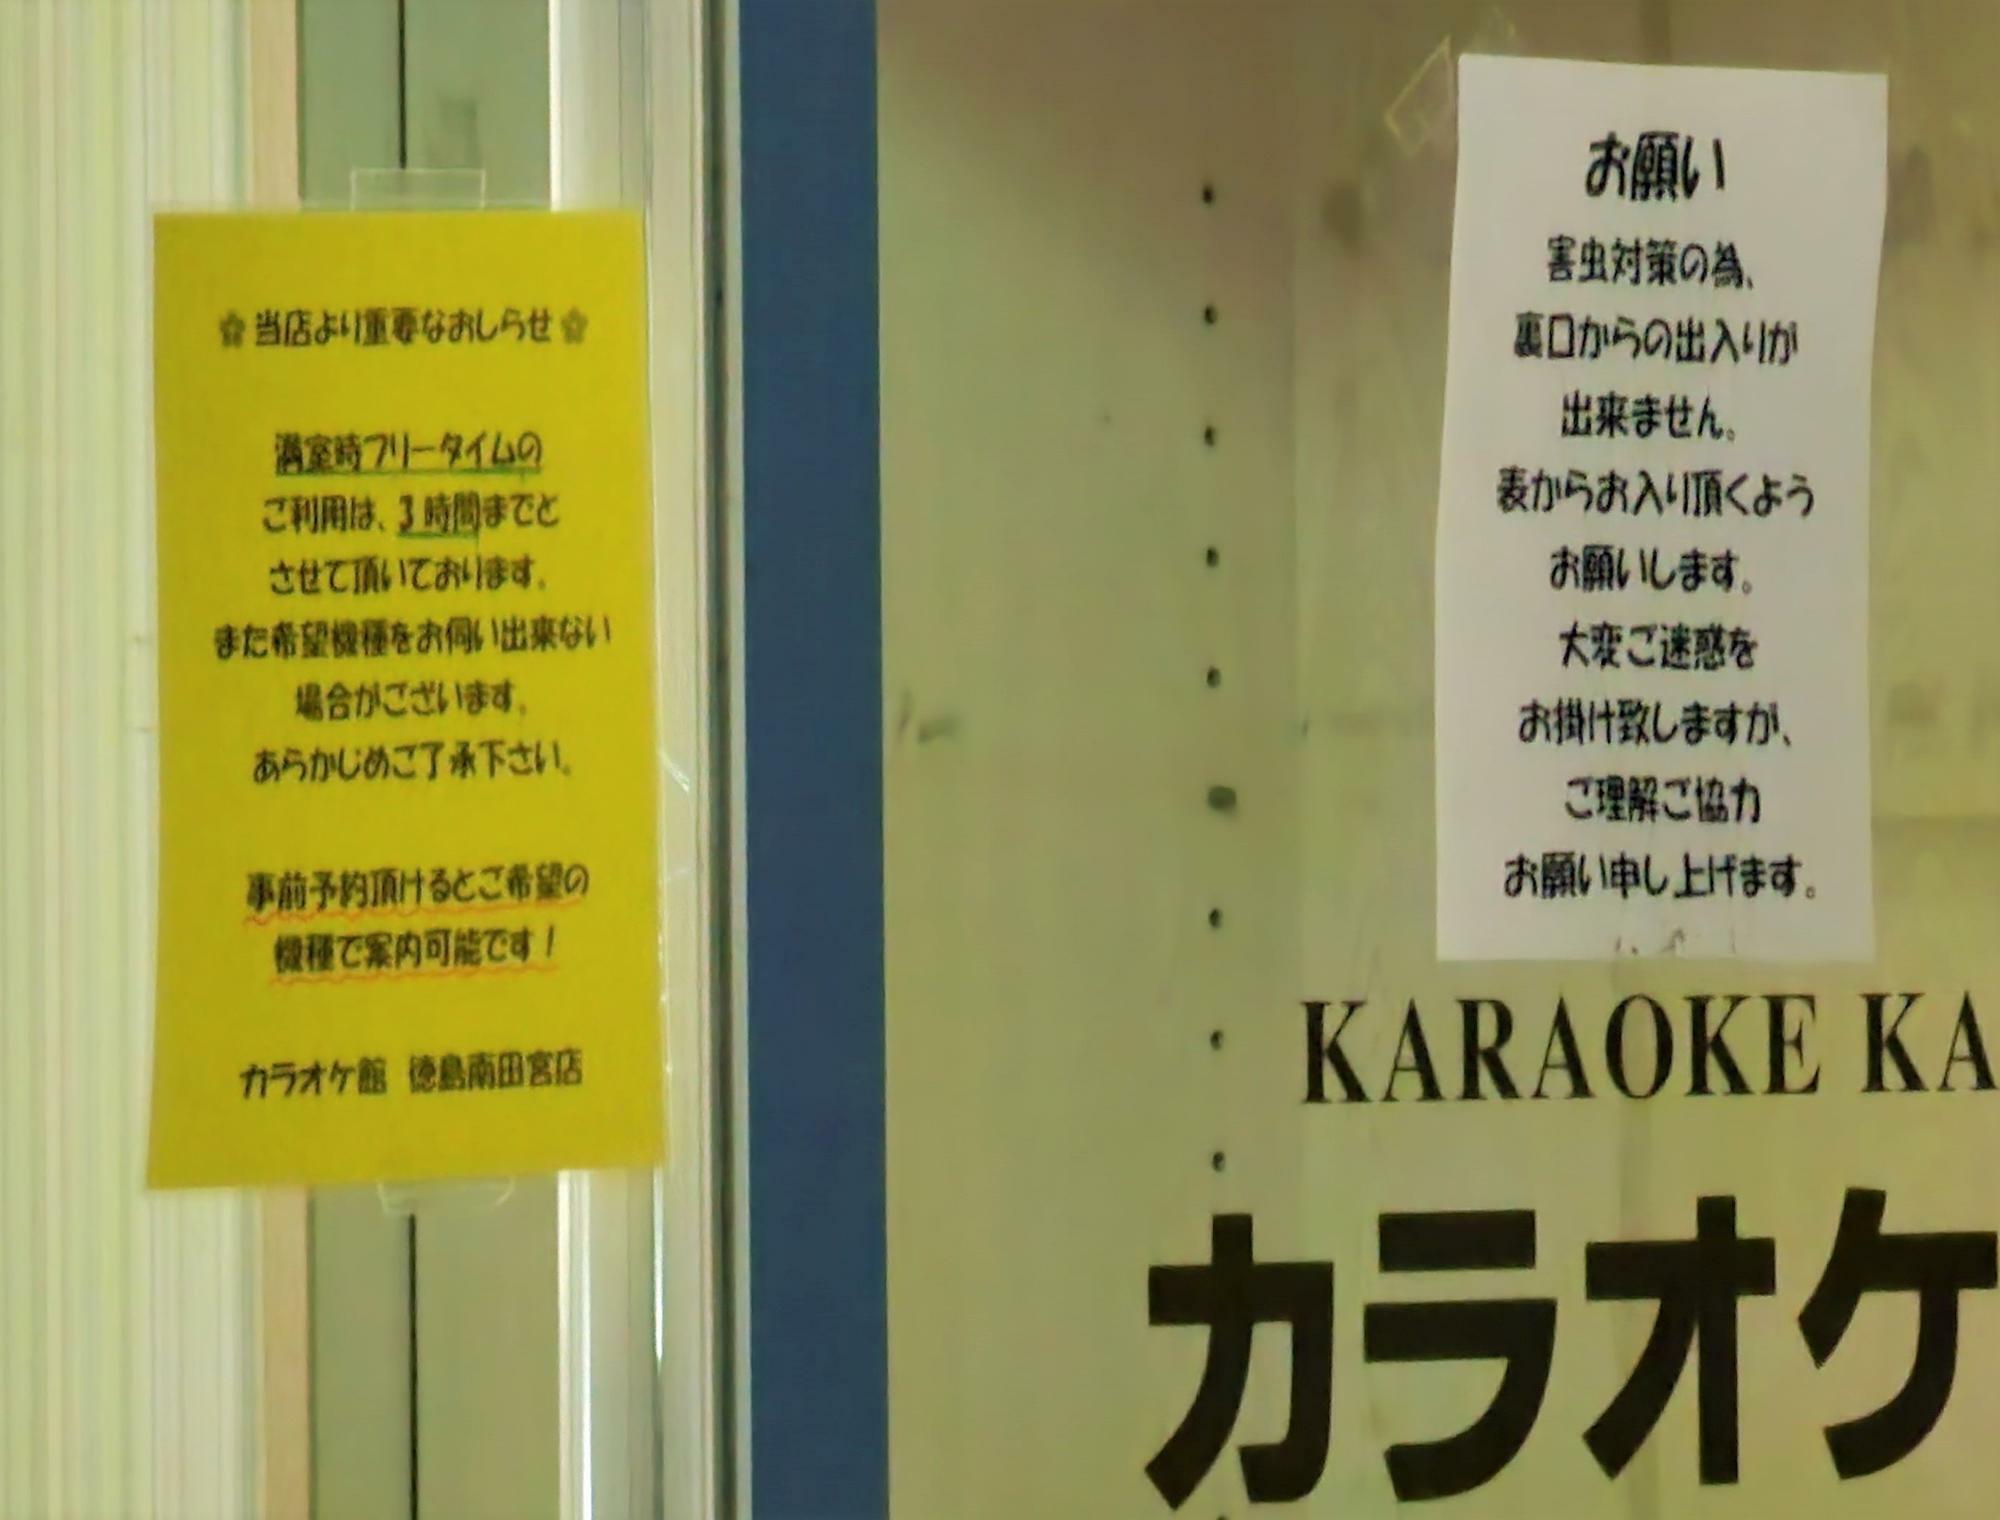 「カラオケ館 徳島南田宮店」の告知物。現在、満室時のフリータイムは3時間までとなっている。